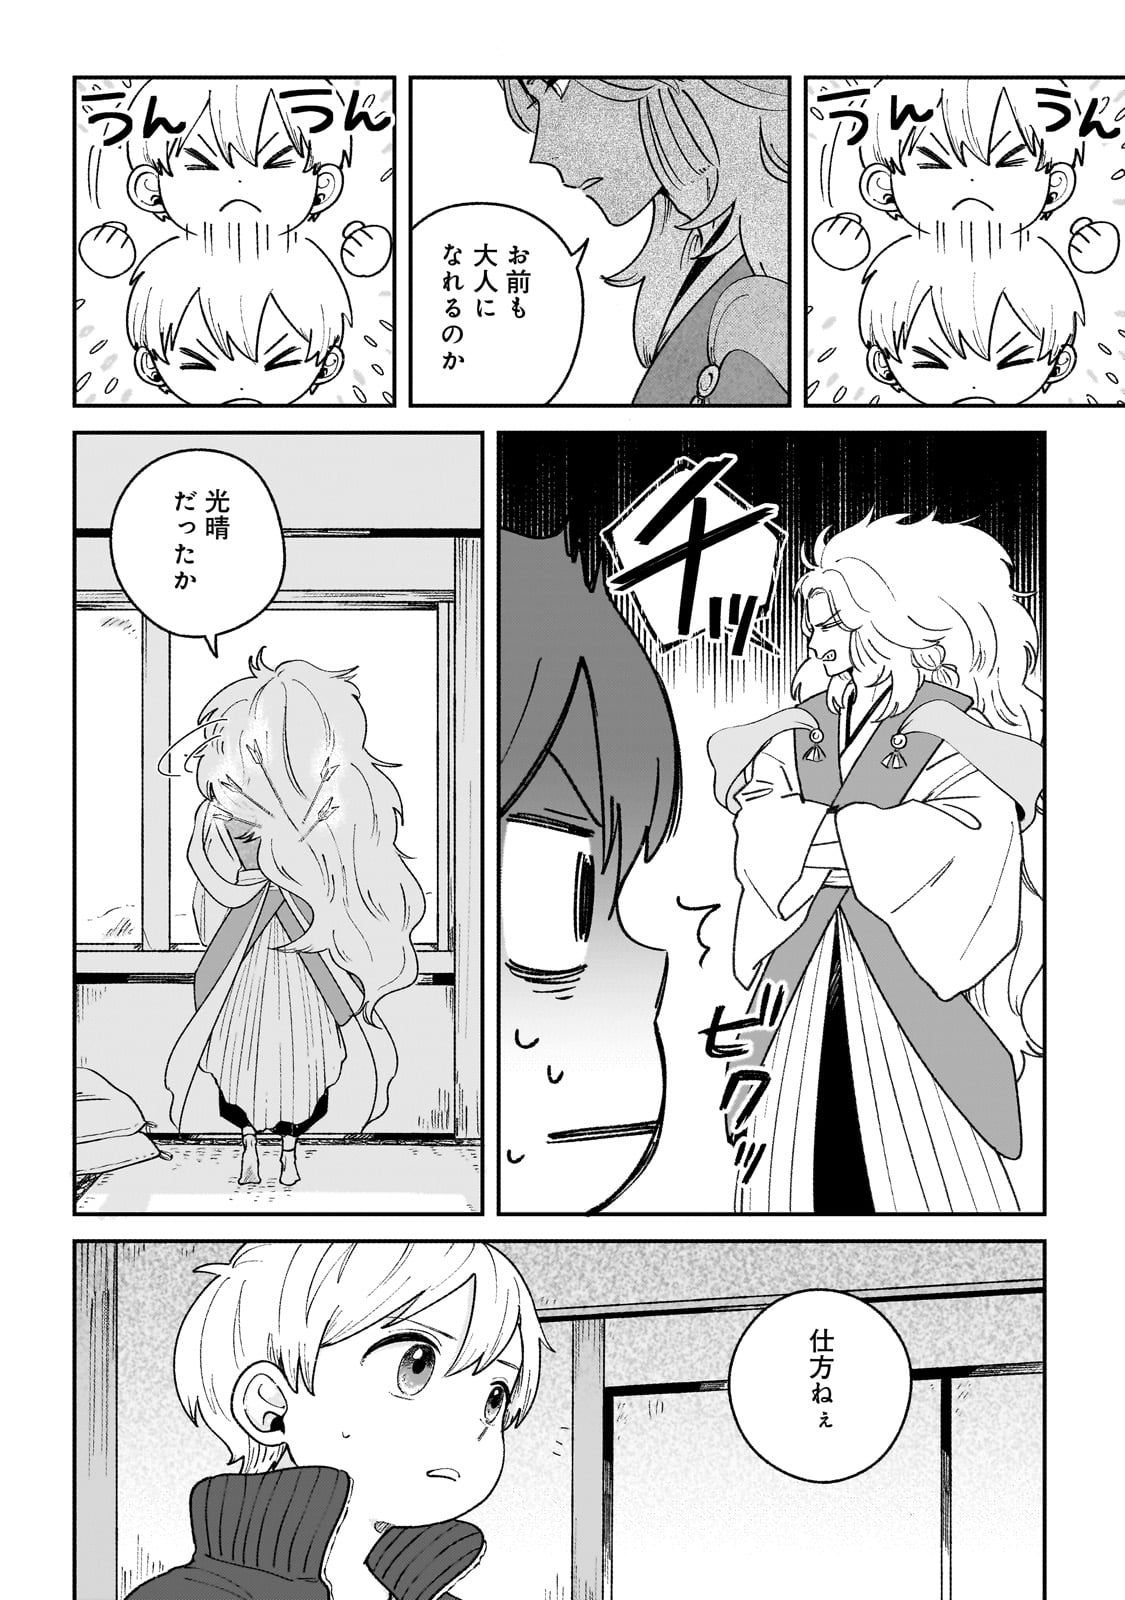 Boku to Ayakashi no 365 Nichi - Chapter 1 - Page 26